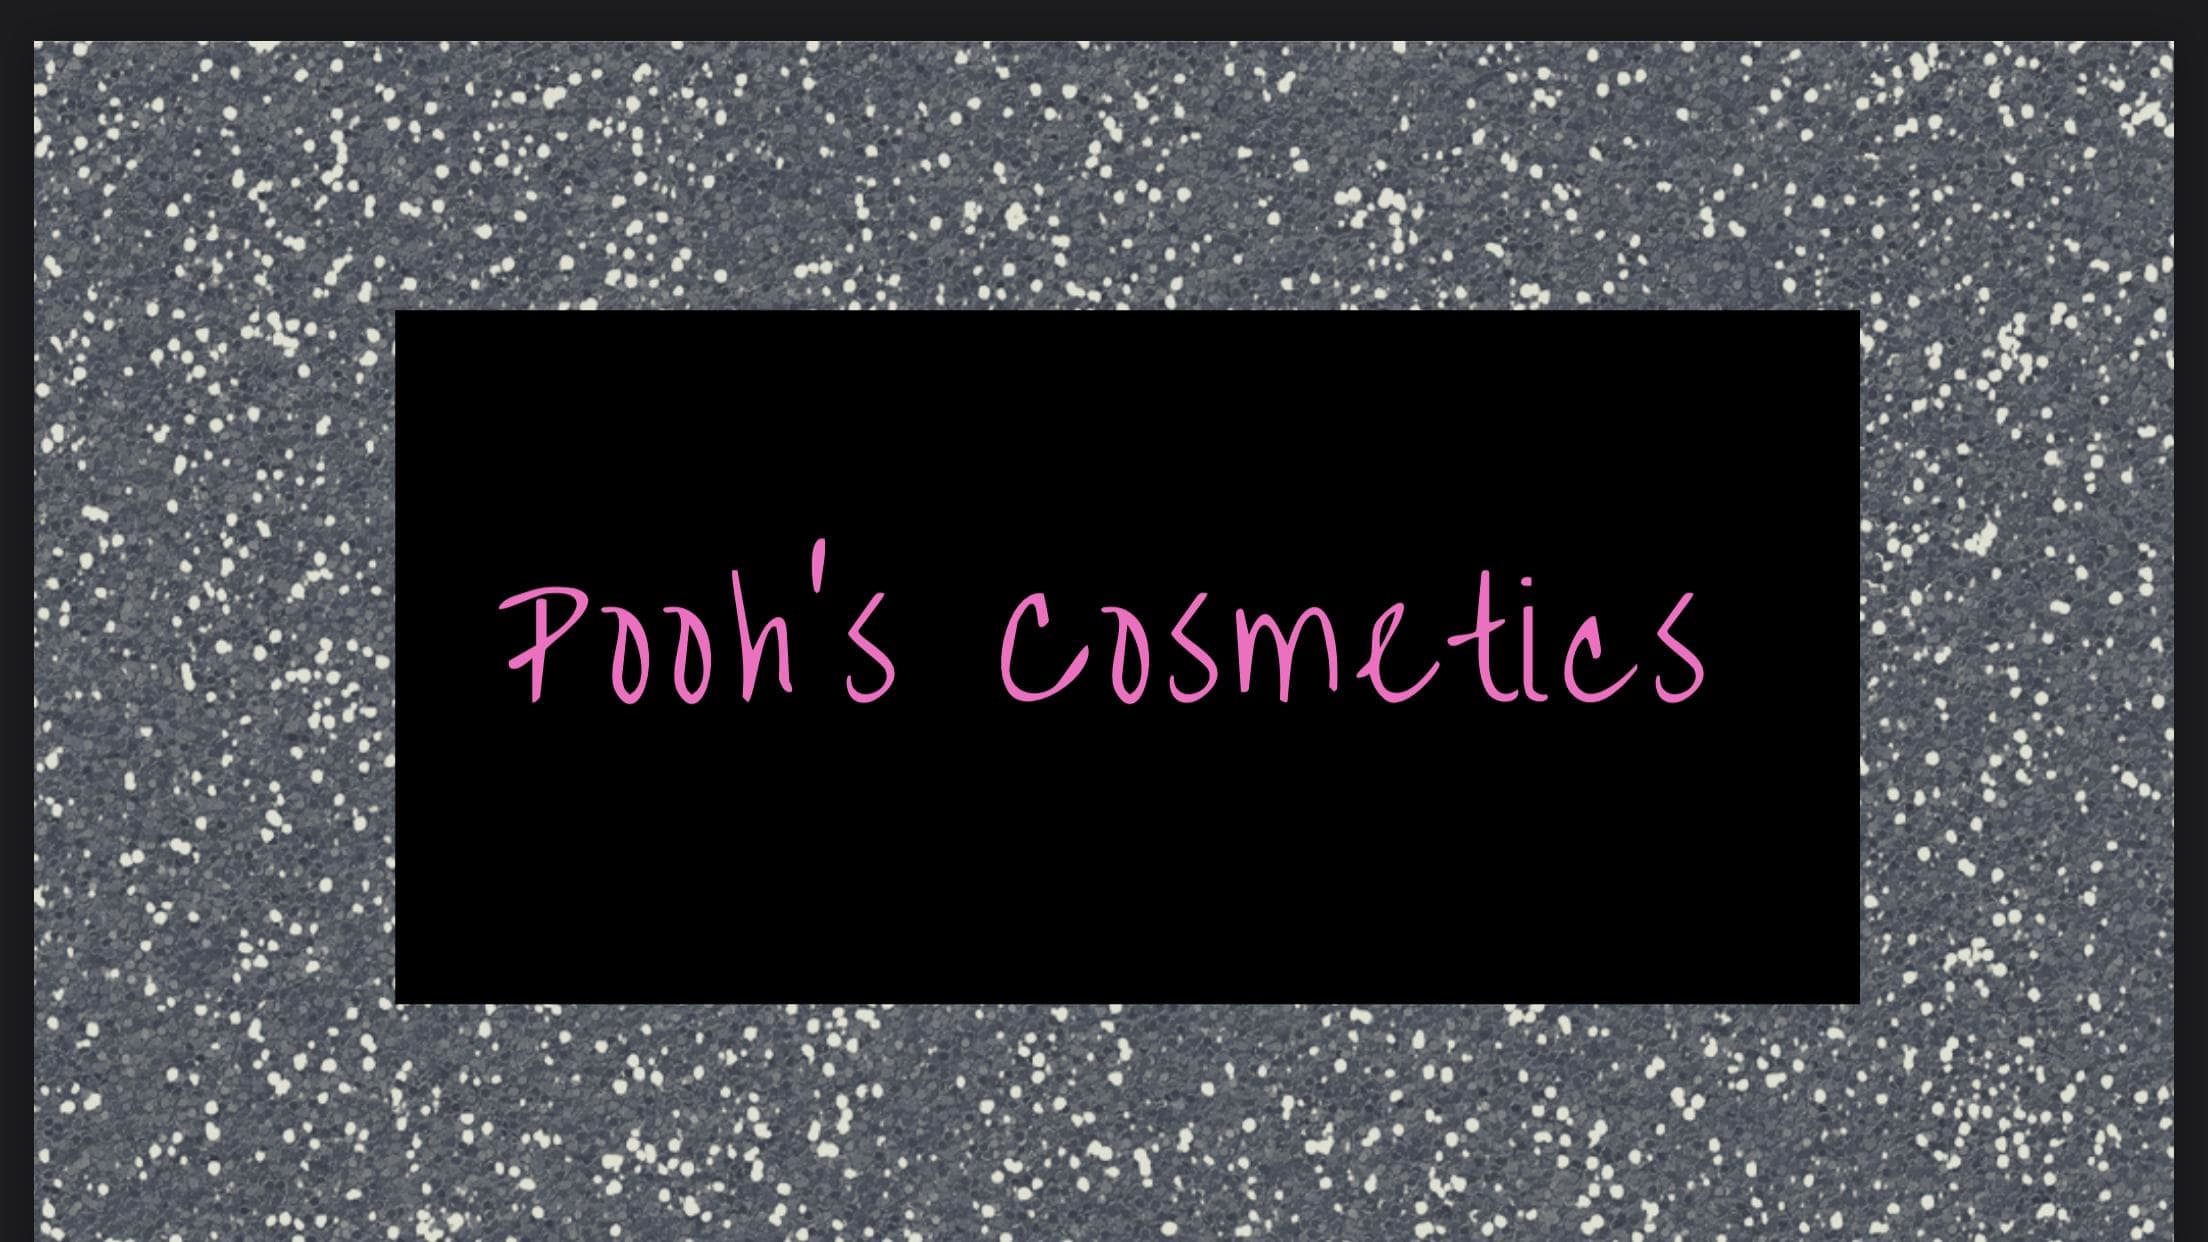 Pooh’s Cosmetics